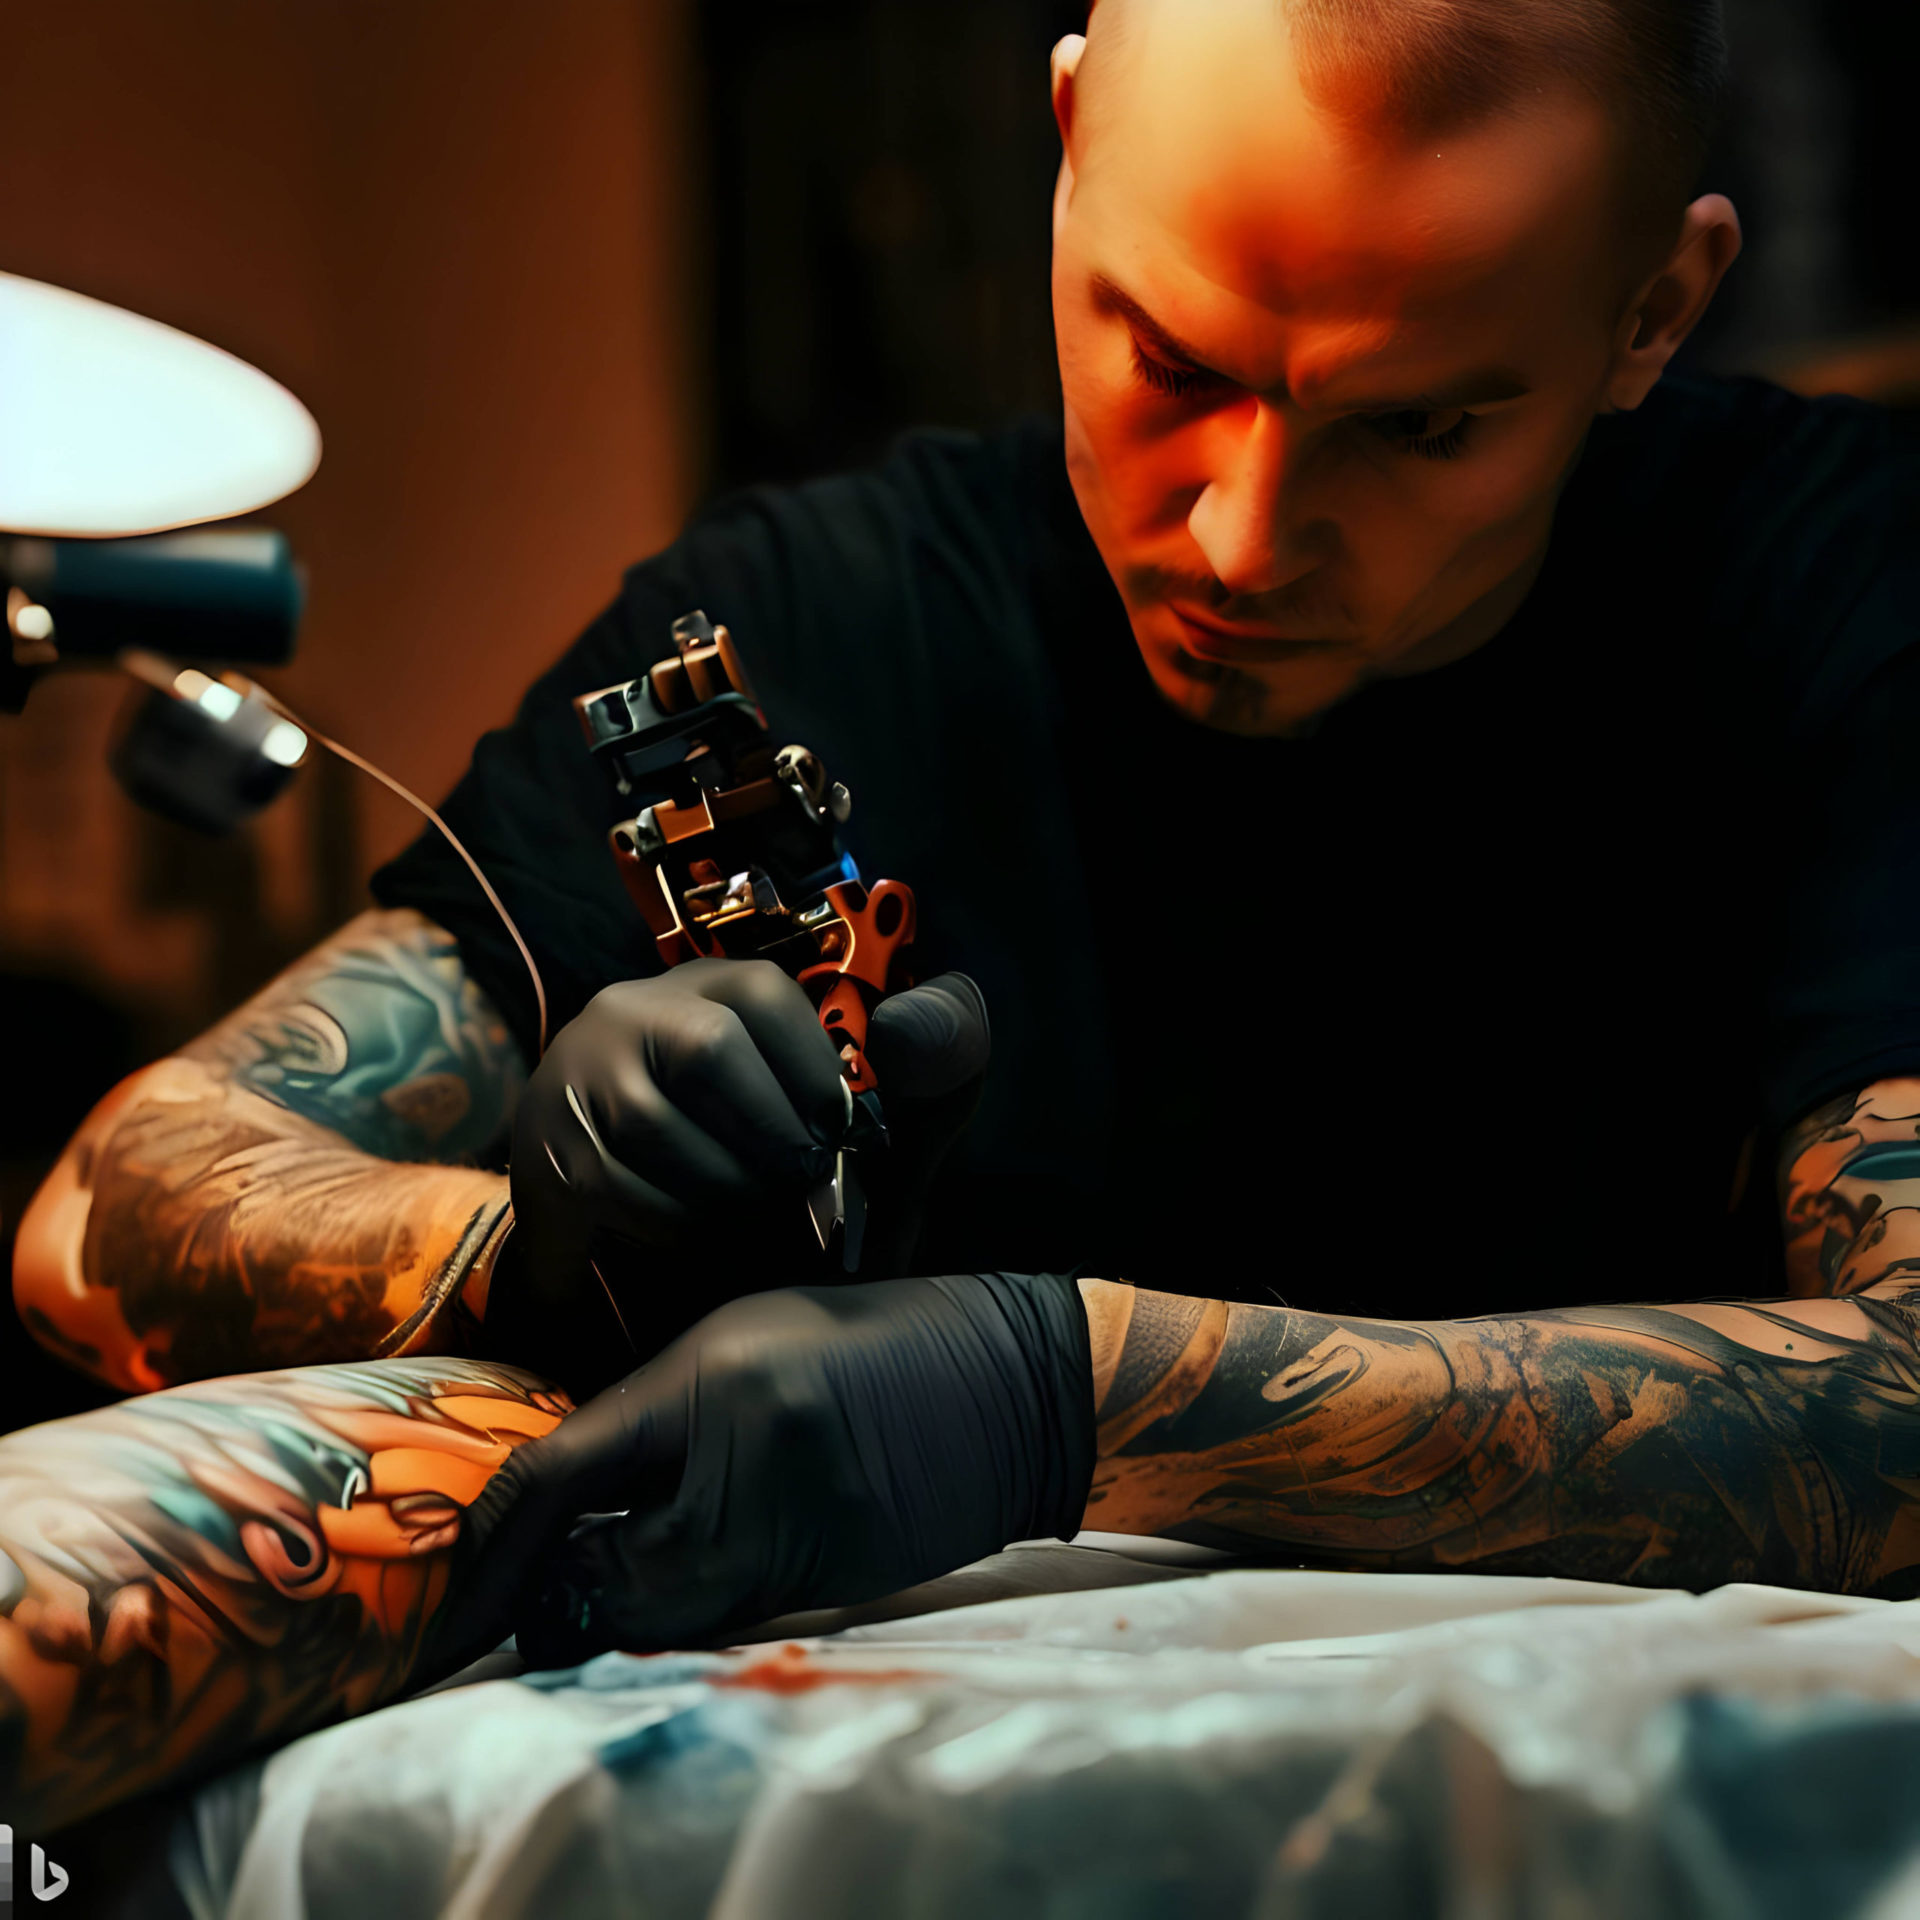 A Tattoo Artist Specializing in San Judas Tattoo